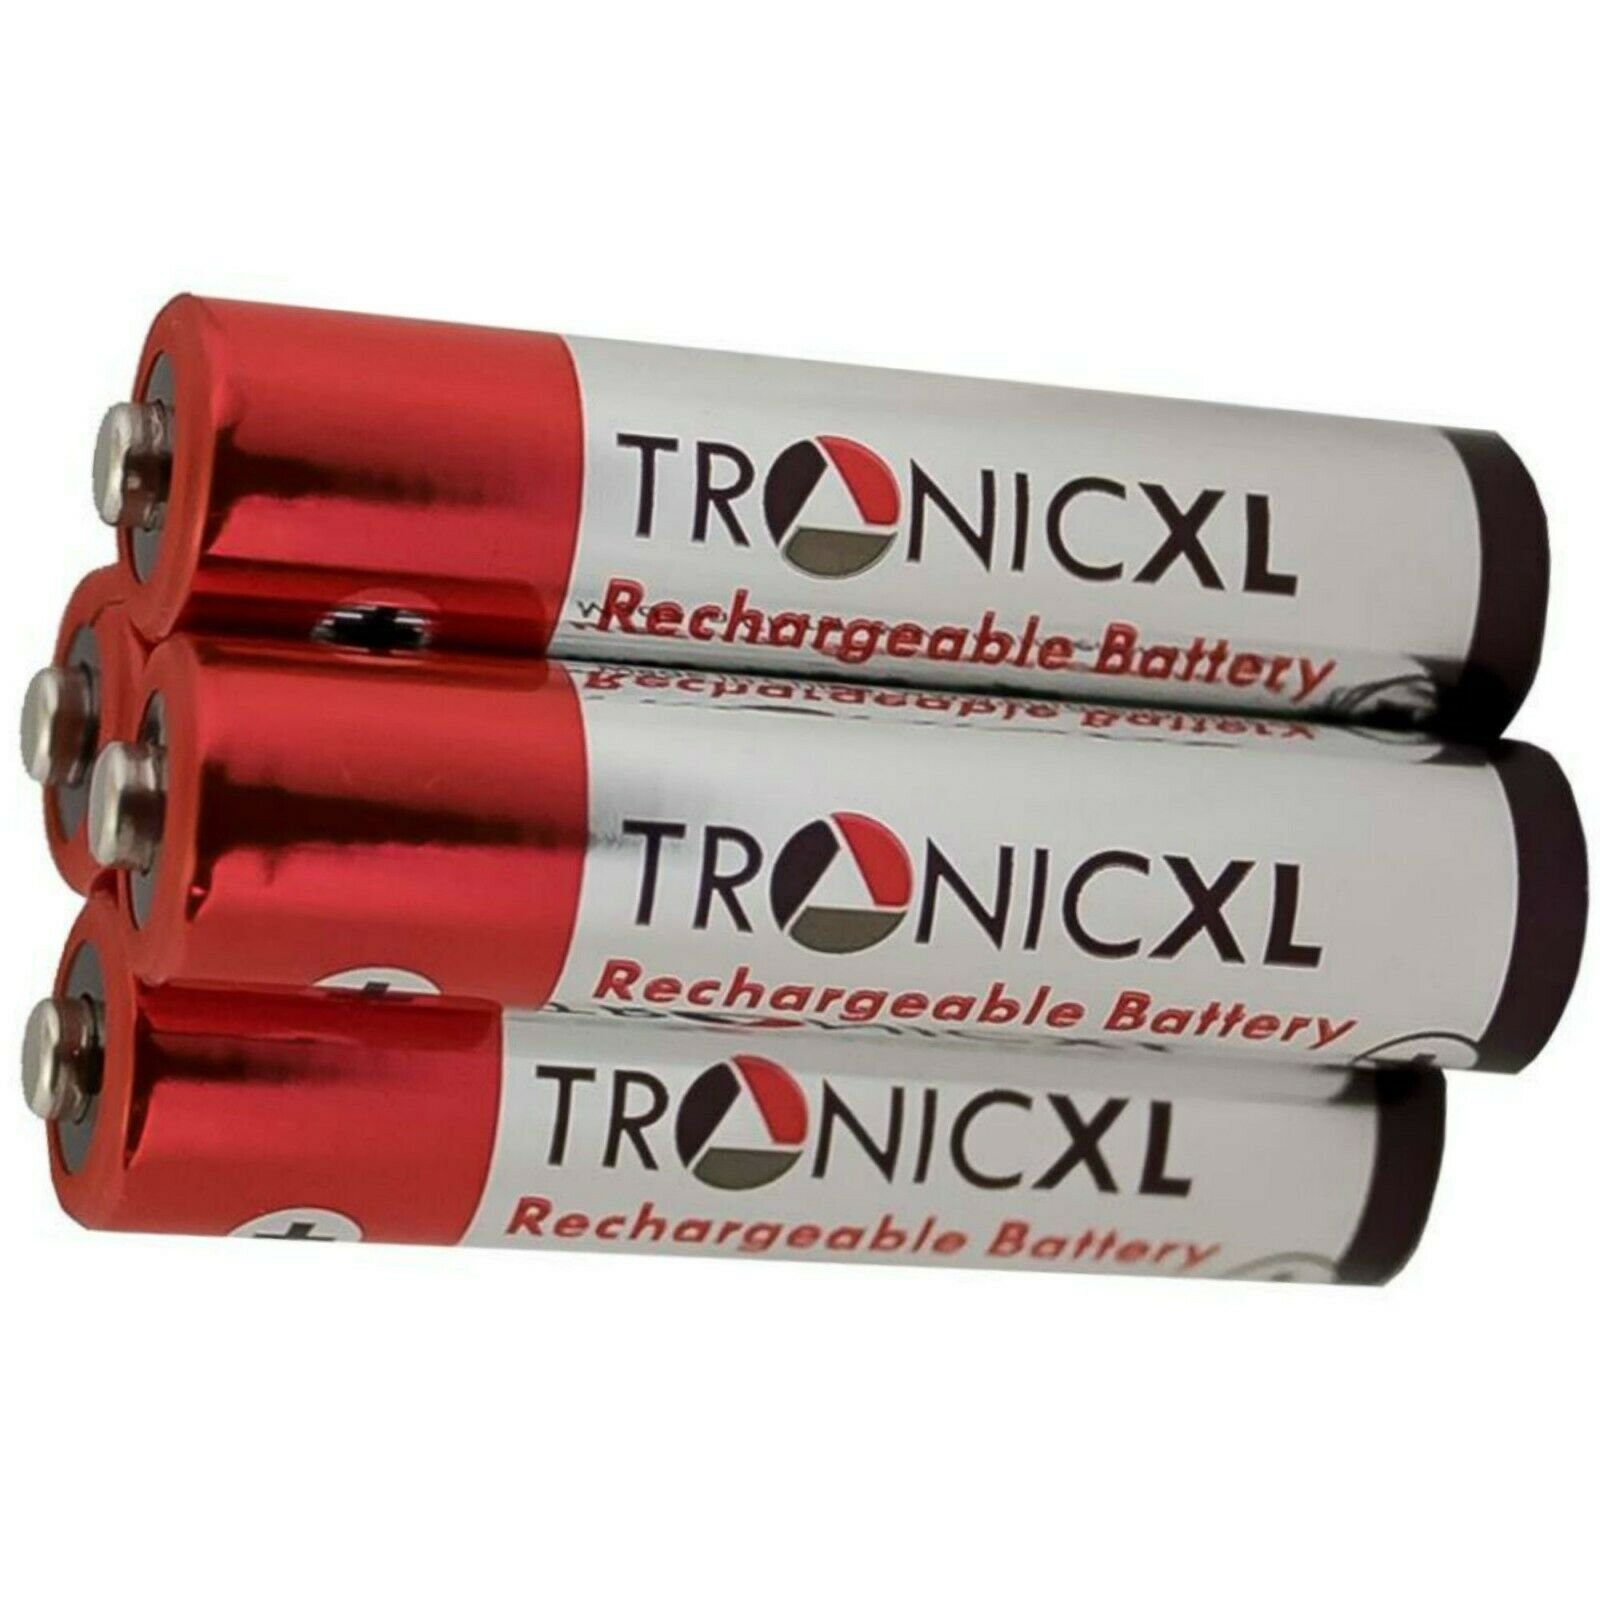 TronicXL AAA Akku für Telefon Panasonic KX-TG6592 KX-TG6711 KX-TG6712 KX-TG6721 Batterie, (4 St)